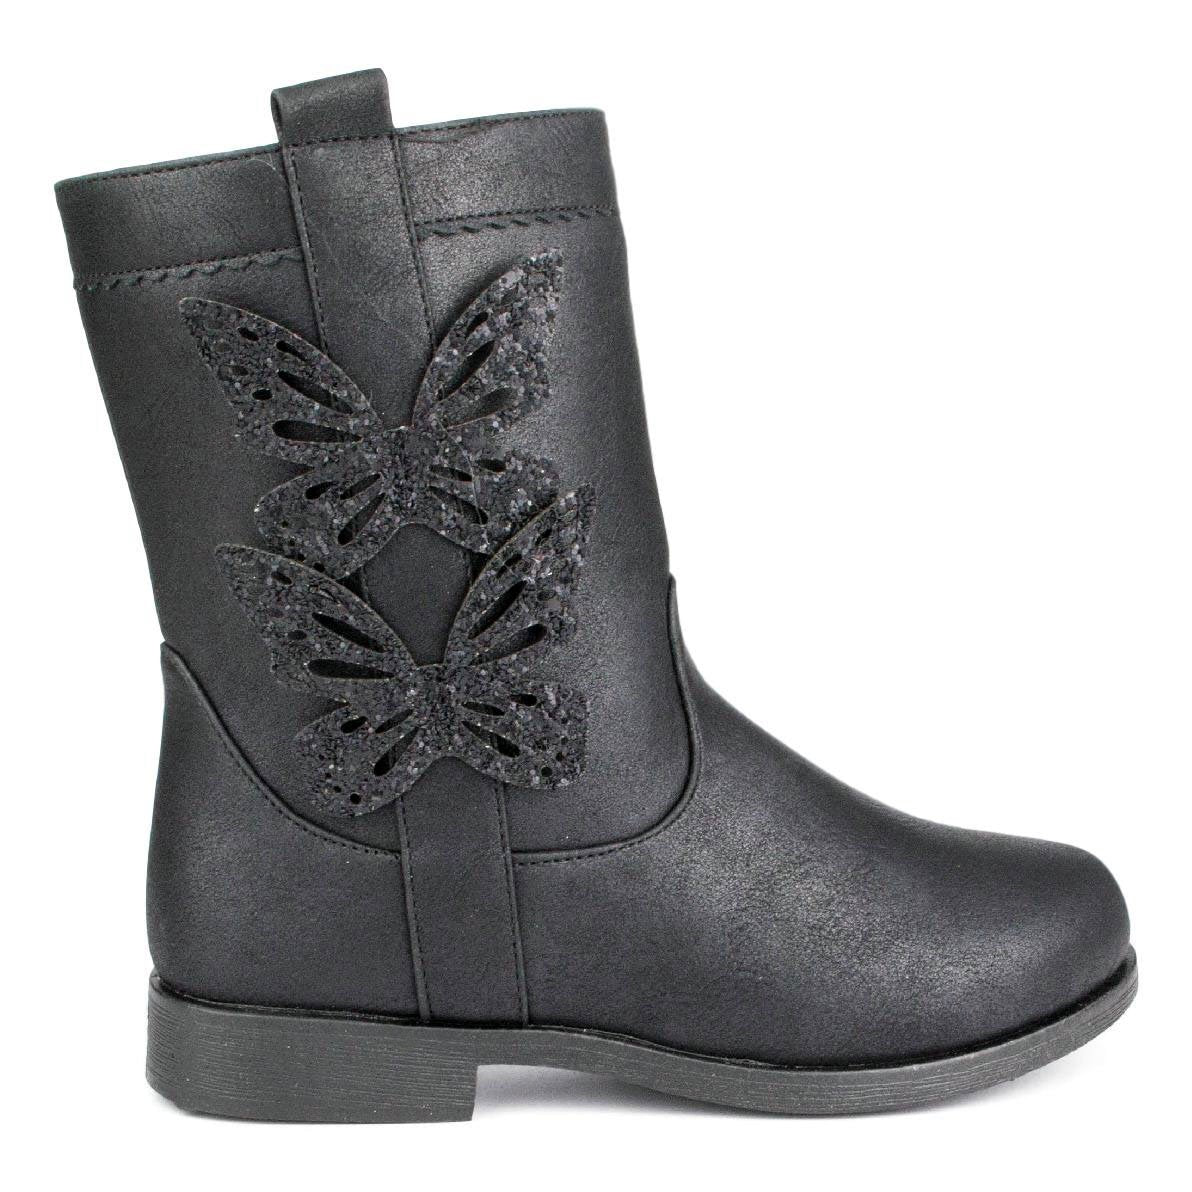 Girls Black Zip Up Boot - Watney Shoes 